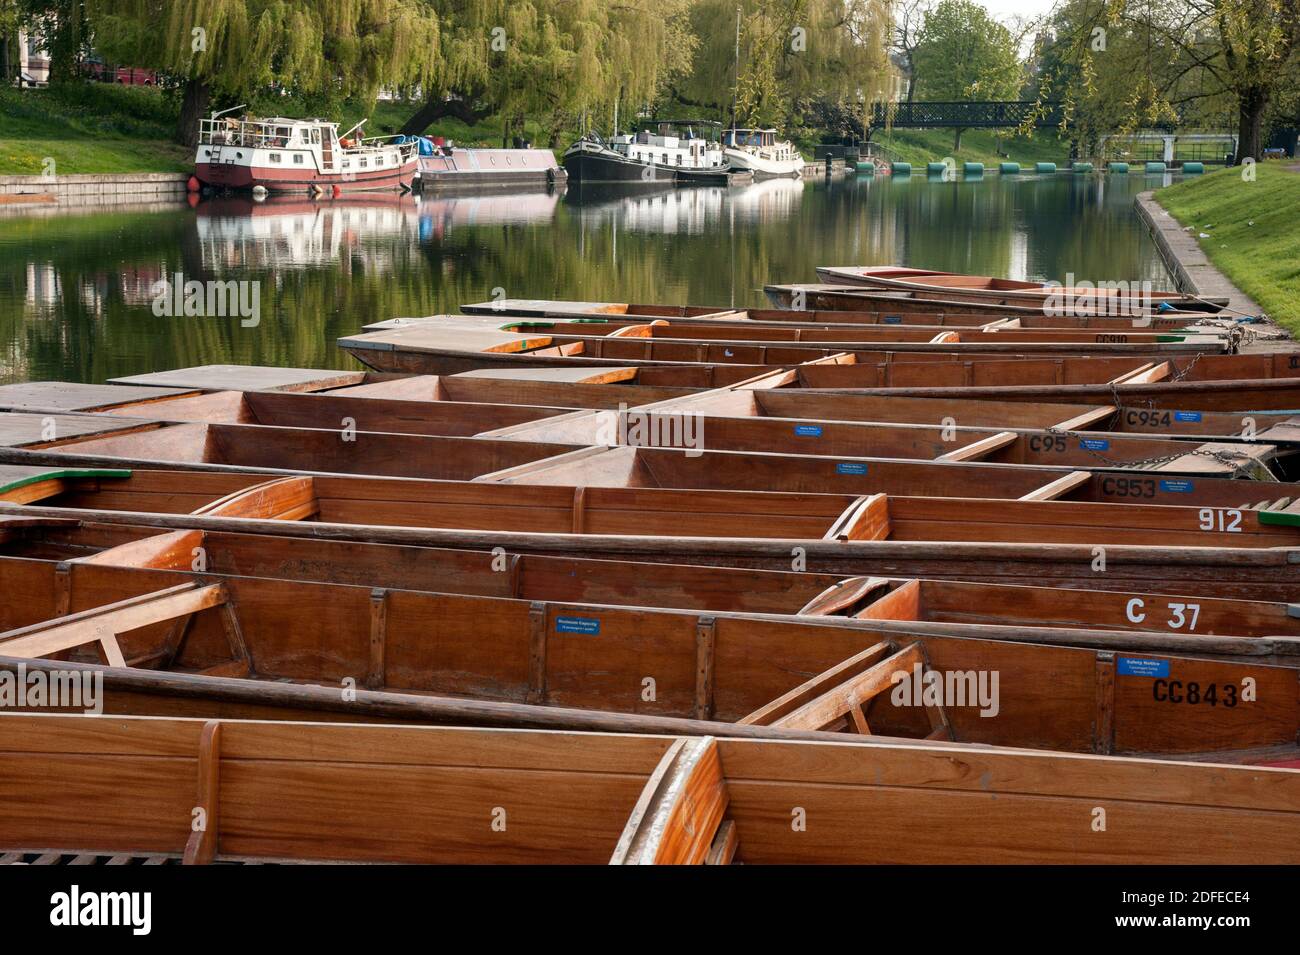 CAMBRIDGE, Reino Unido: Fila de punts vacíos amarrados en el río Cam Foto de stock